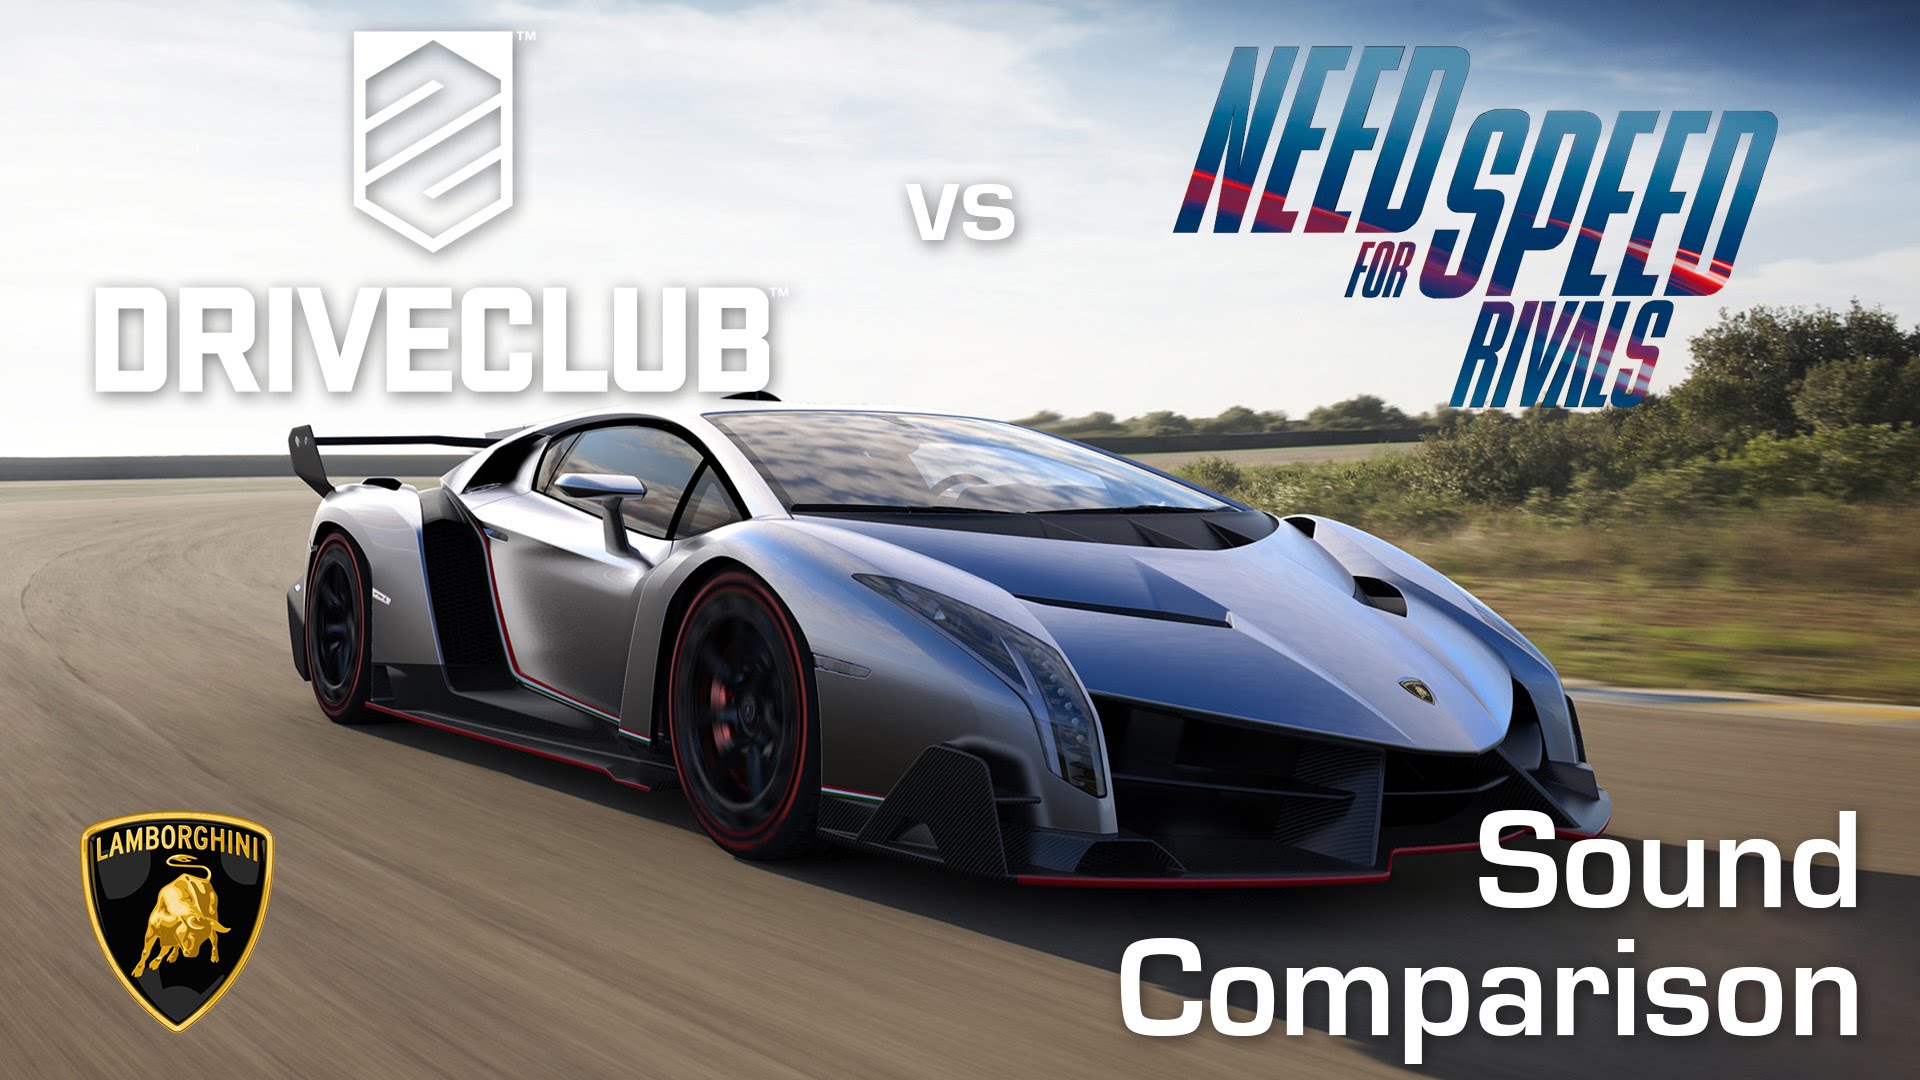 دو بازی Driveclub و Need for Speed: Rivals را بدون شک میتوان جزو برترین باز...